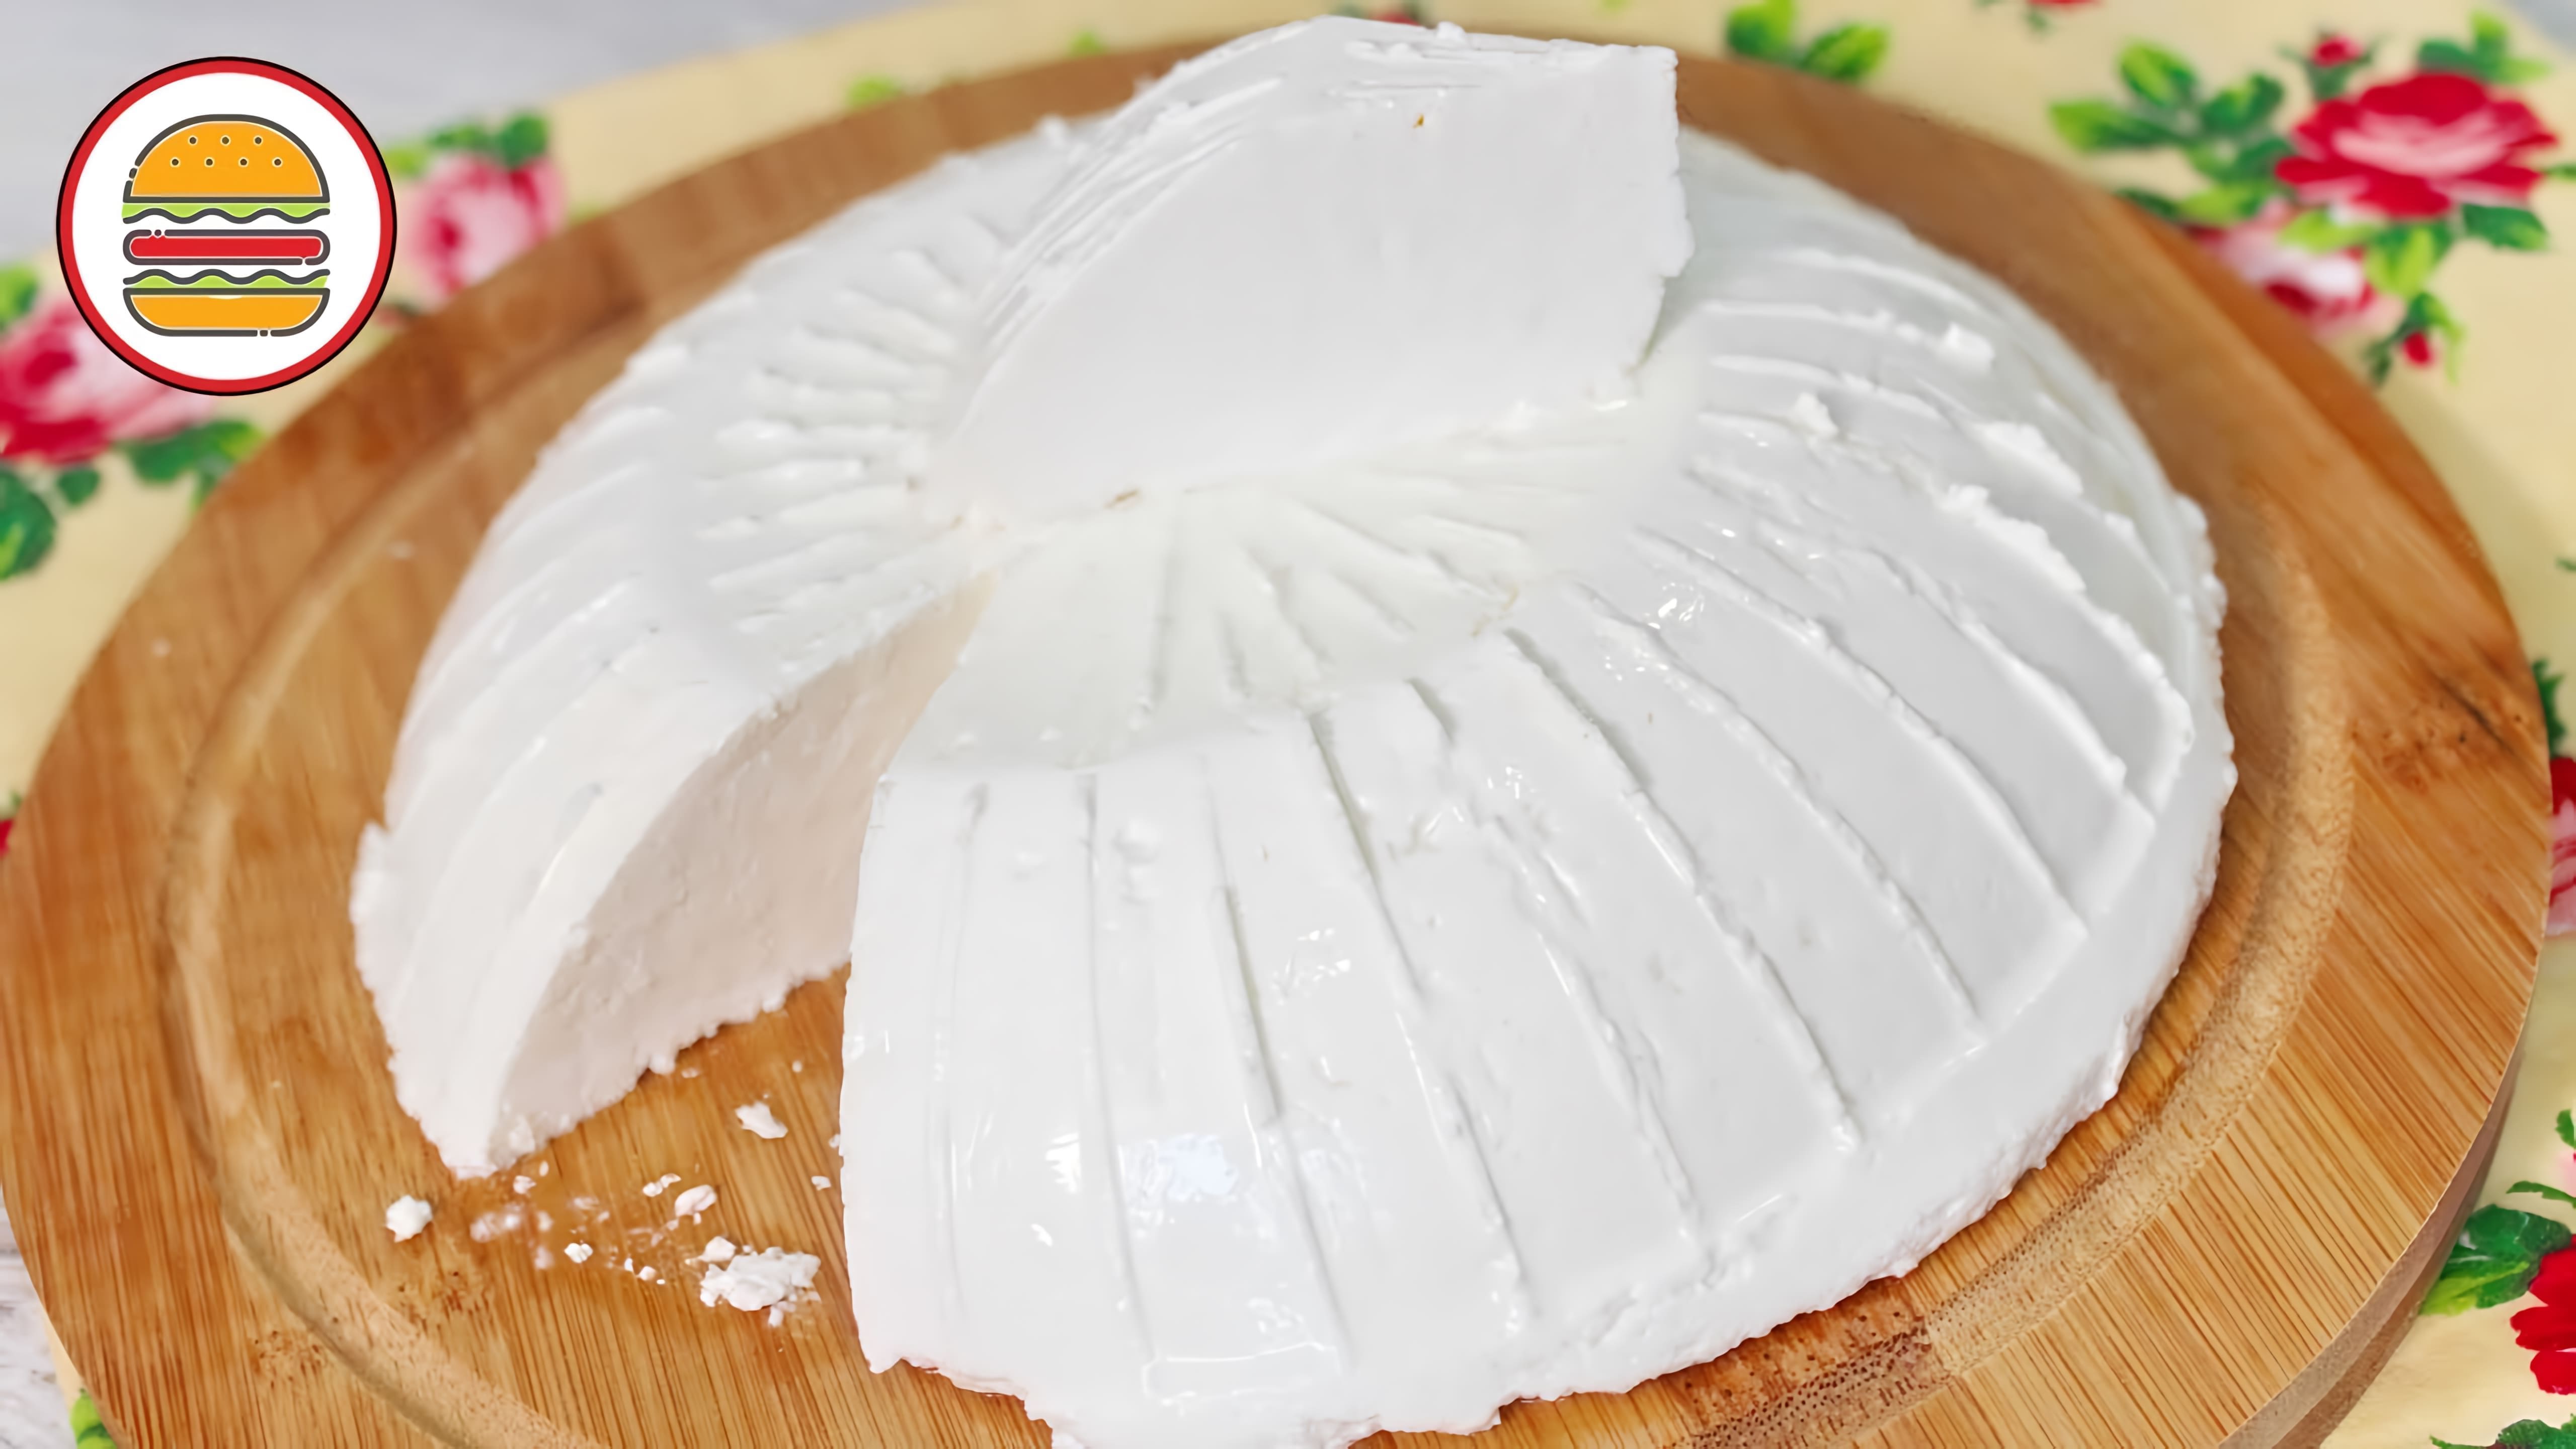 В этом видео демонстрируется процесс приготовления домашнего сыра из молока в мультиварке